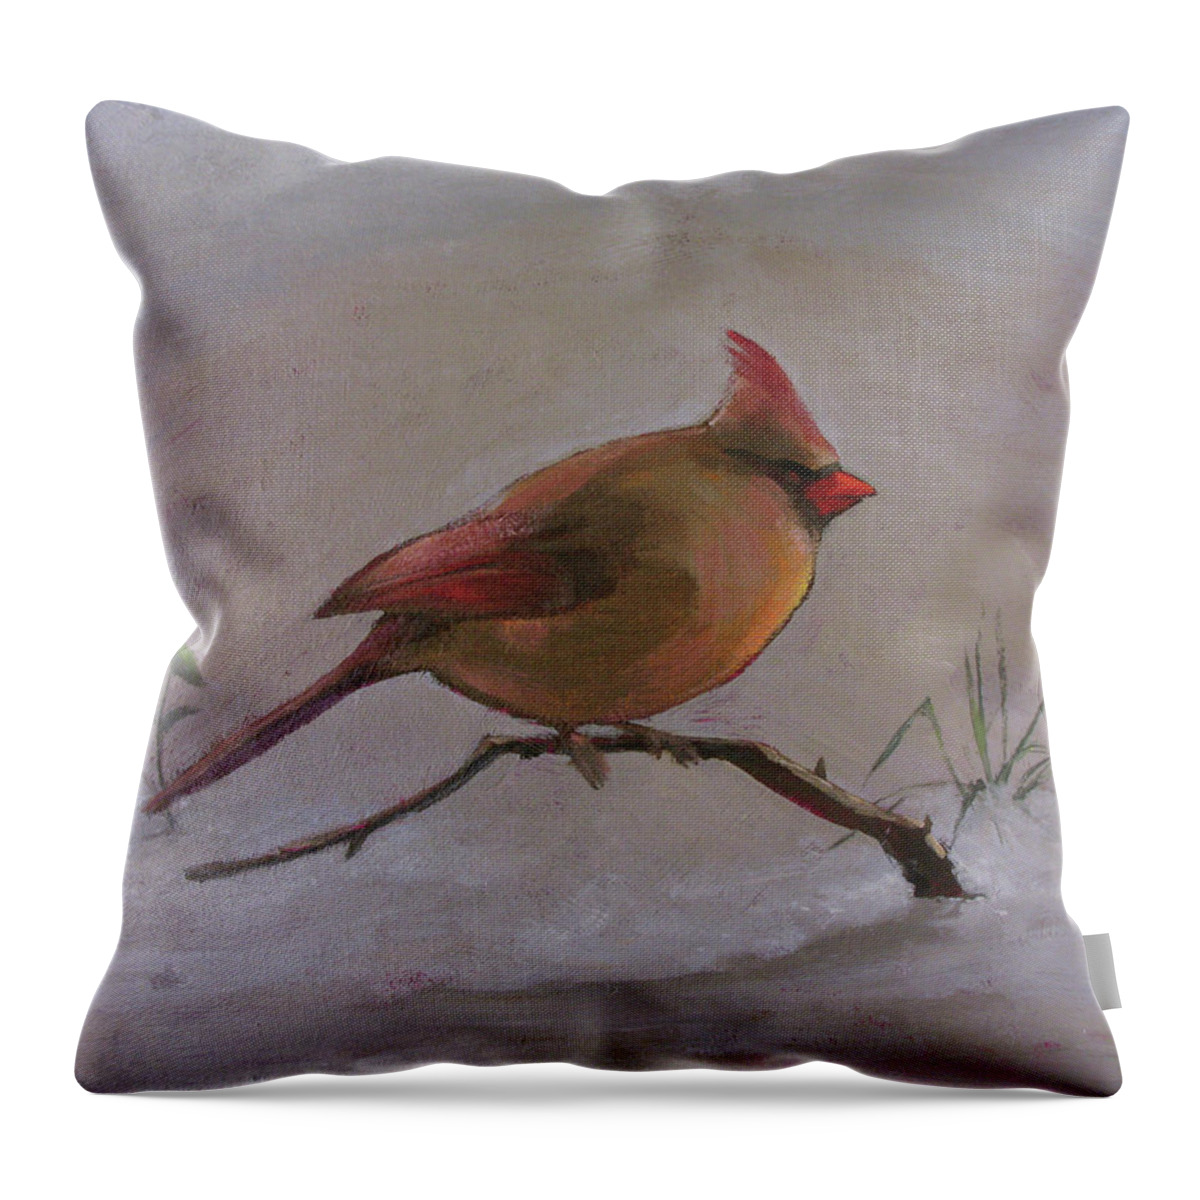 Cardinal Throw Pillow featuring the painting Winter Cardinal by Don Morgan